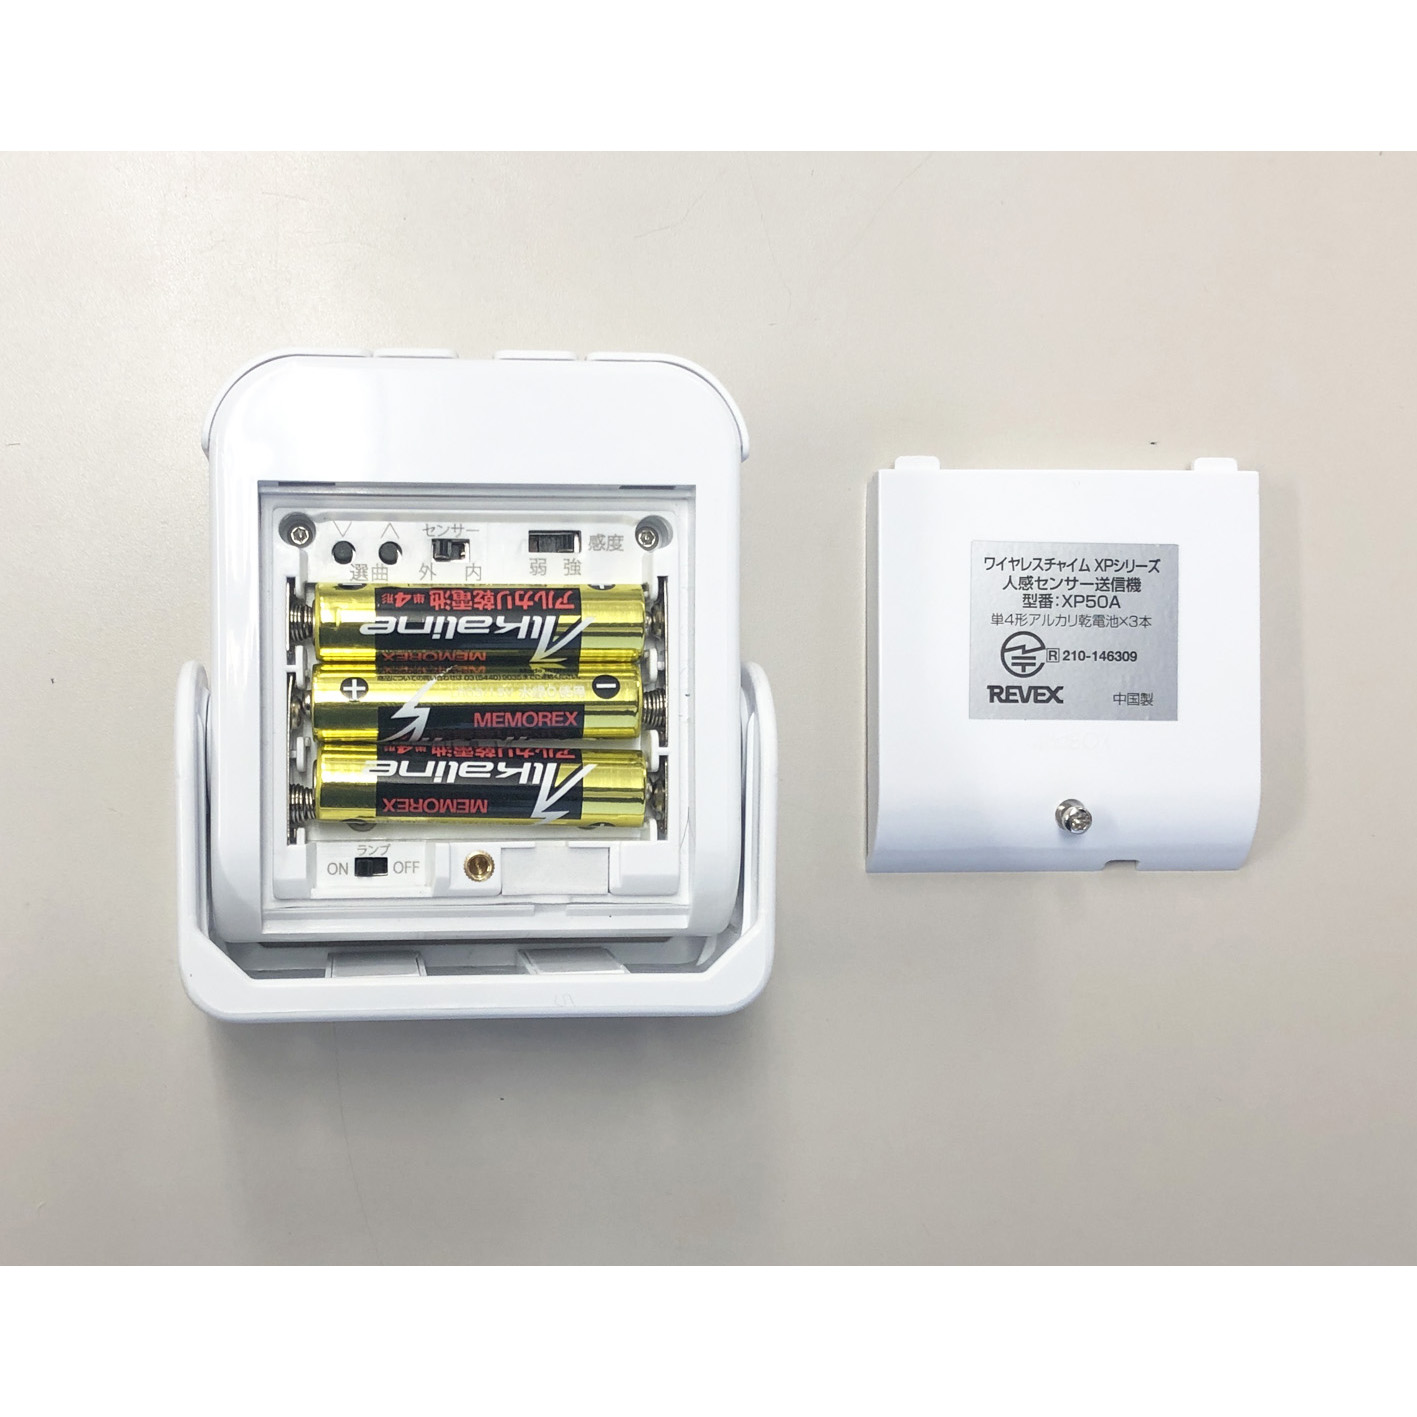 人感センサー受信LEDライトセット XP1250A/XP120(XPN1250A/XPN120)共通 – リーベックス株式会社